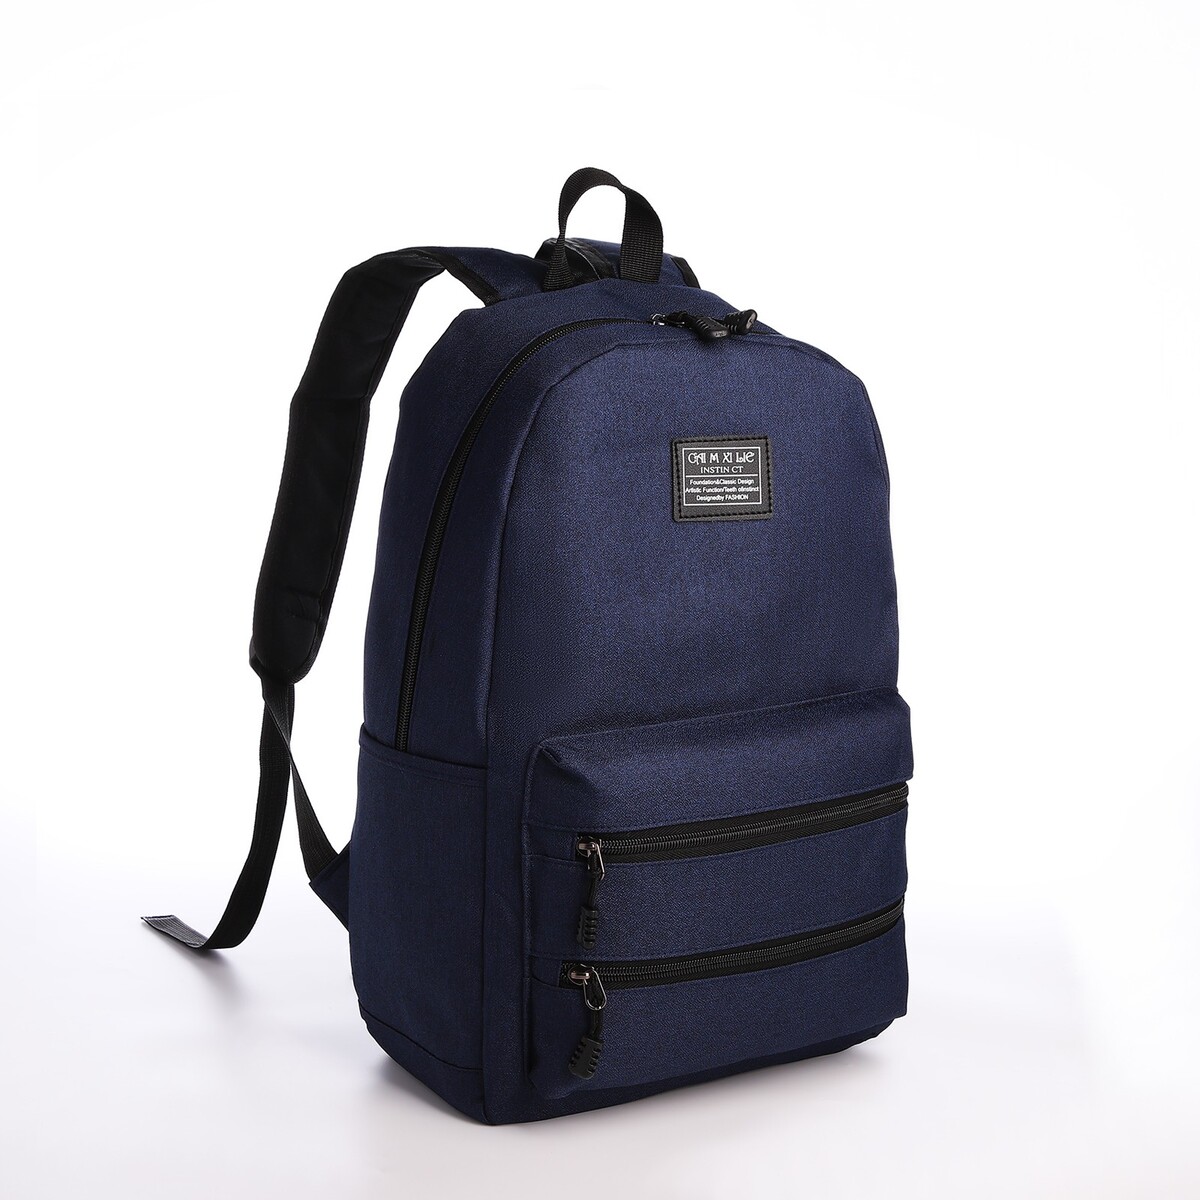 Рюкзак молодежный из текстиля на молнии, usb, 5 карманов, цвет синий рюкзак молодежный из текстиля 5 карманов синий